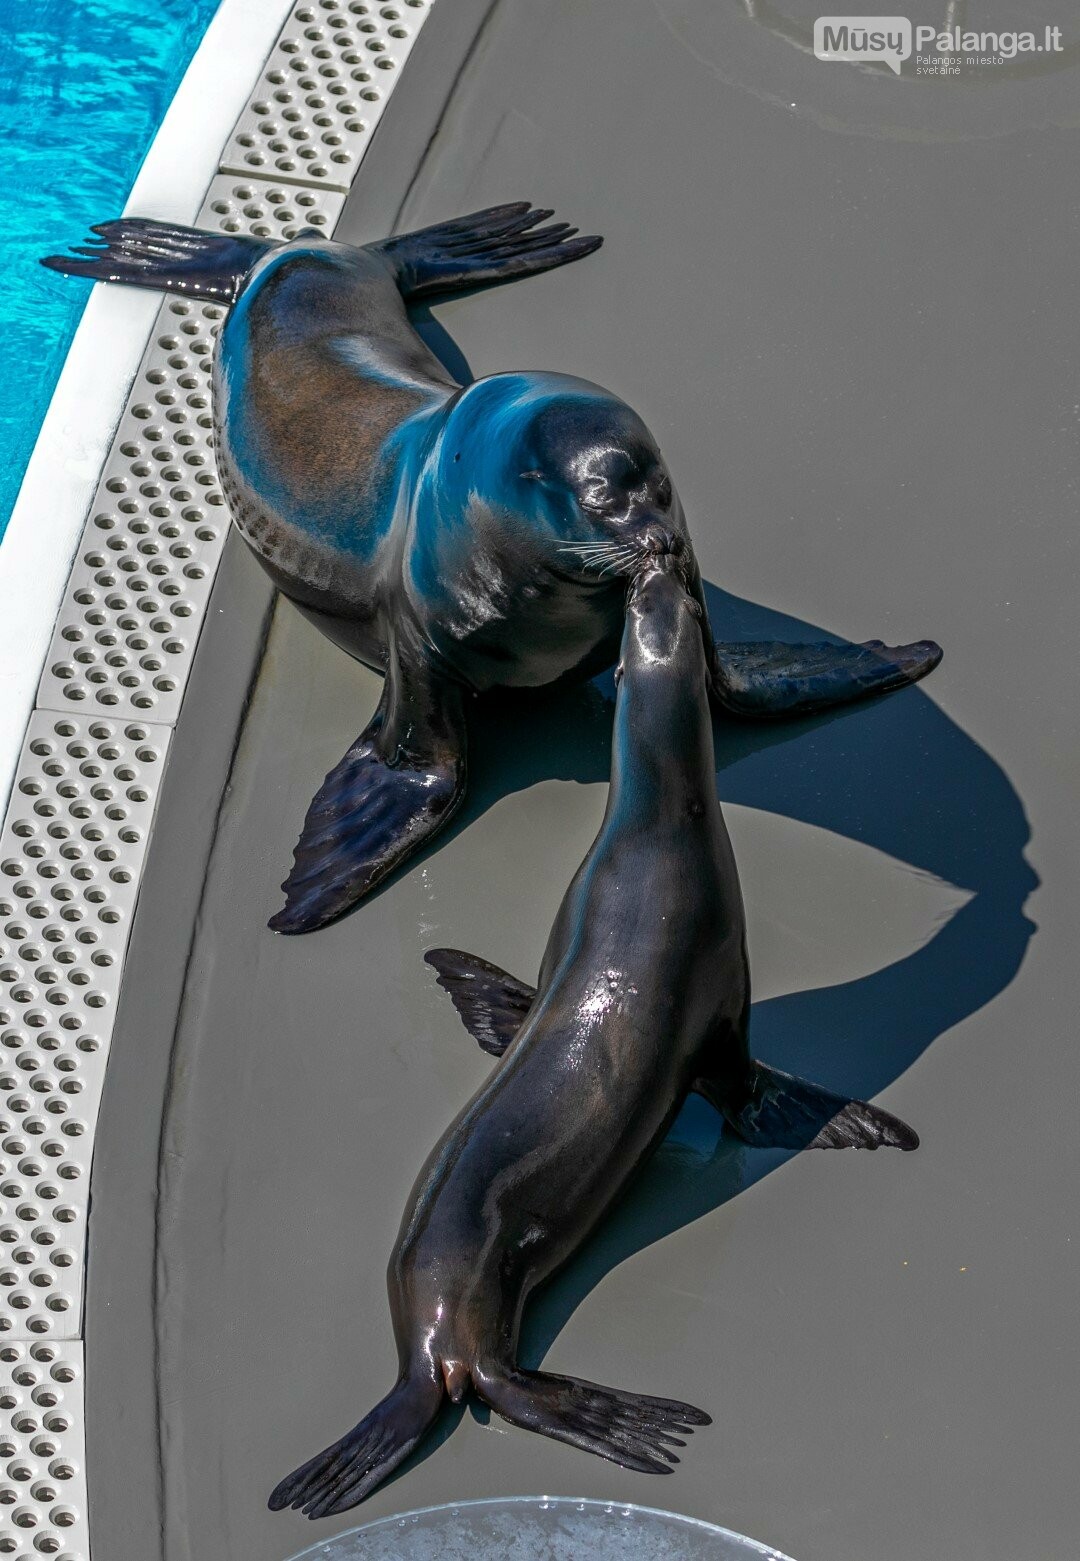 Paskutinėje Lietuvos jūrų muziejaus transliacijoje – delfinų terapija ir kaliforniniai..., nuotrauka-7, Evaldo Lasio ir Neringos Girdvainienės nuotr.